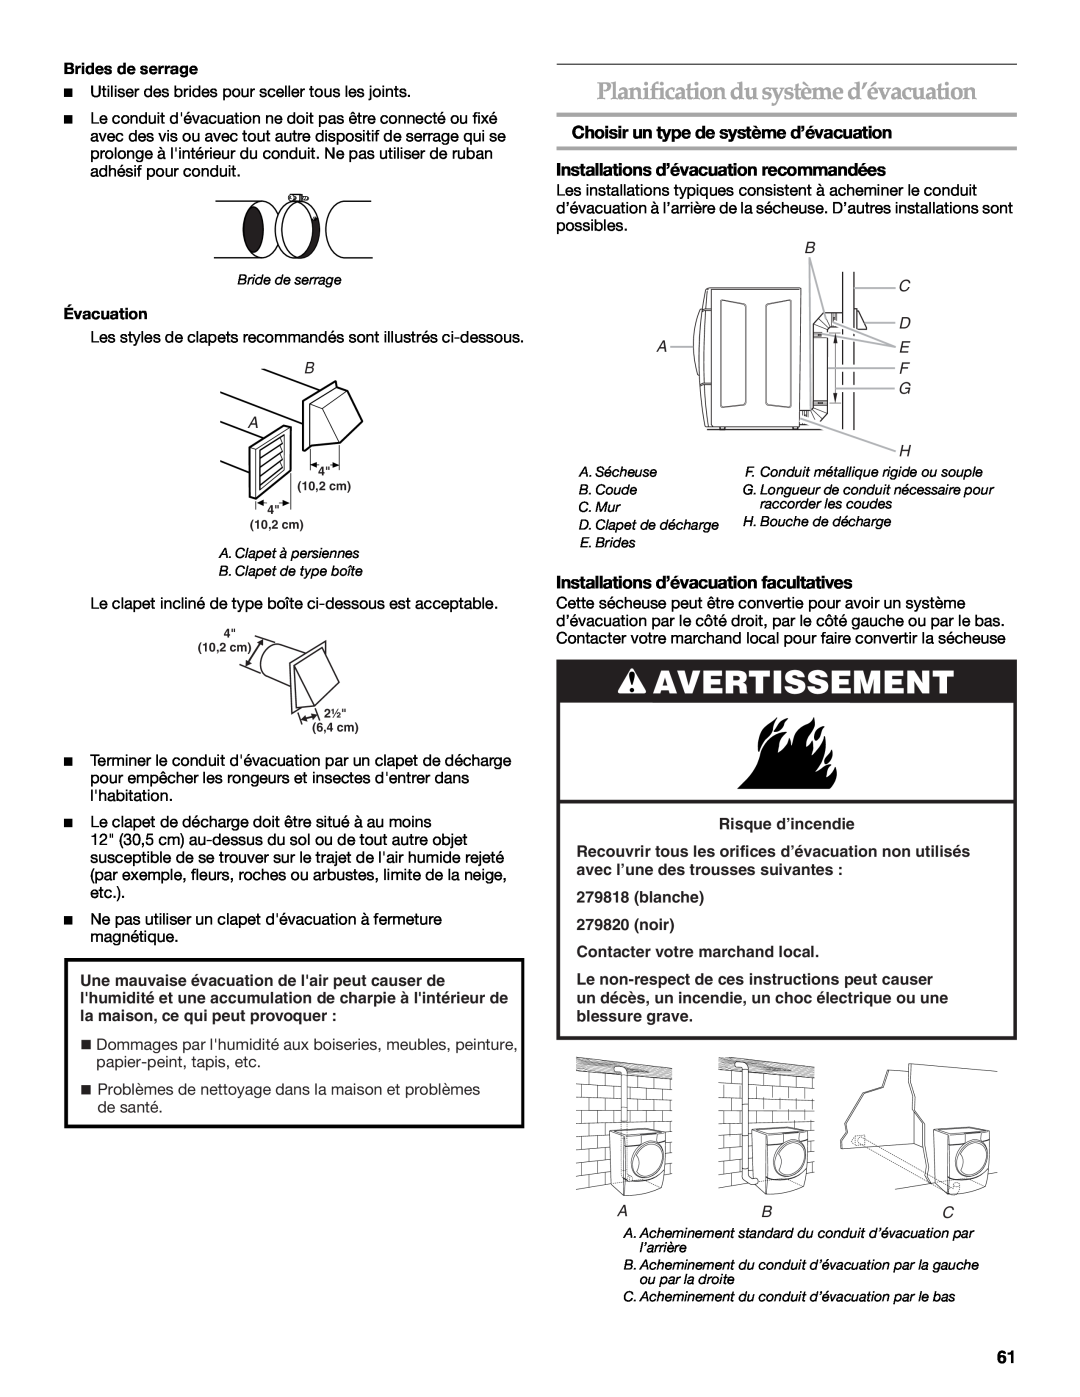 Maytag W10099070 manual Planification du système d’évacuation, Choisir un type de système d’évacuation, Brides de serrage 